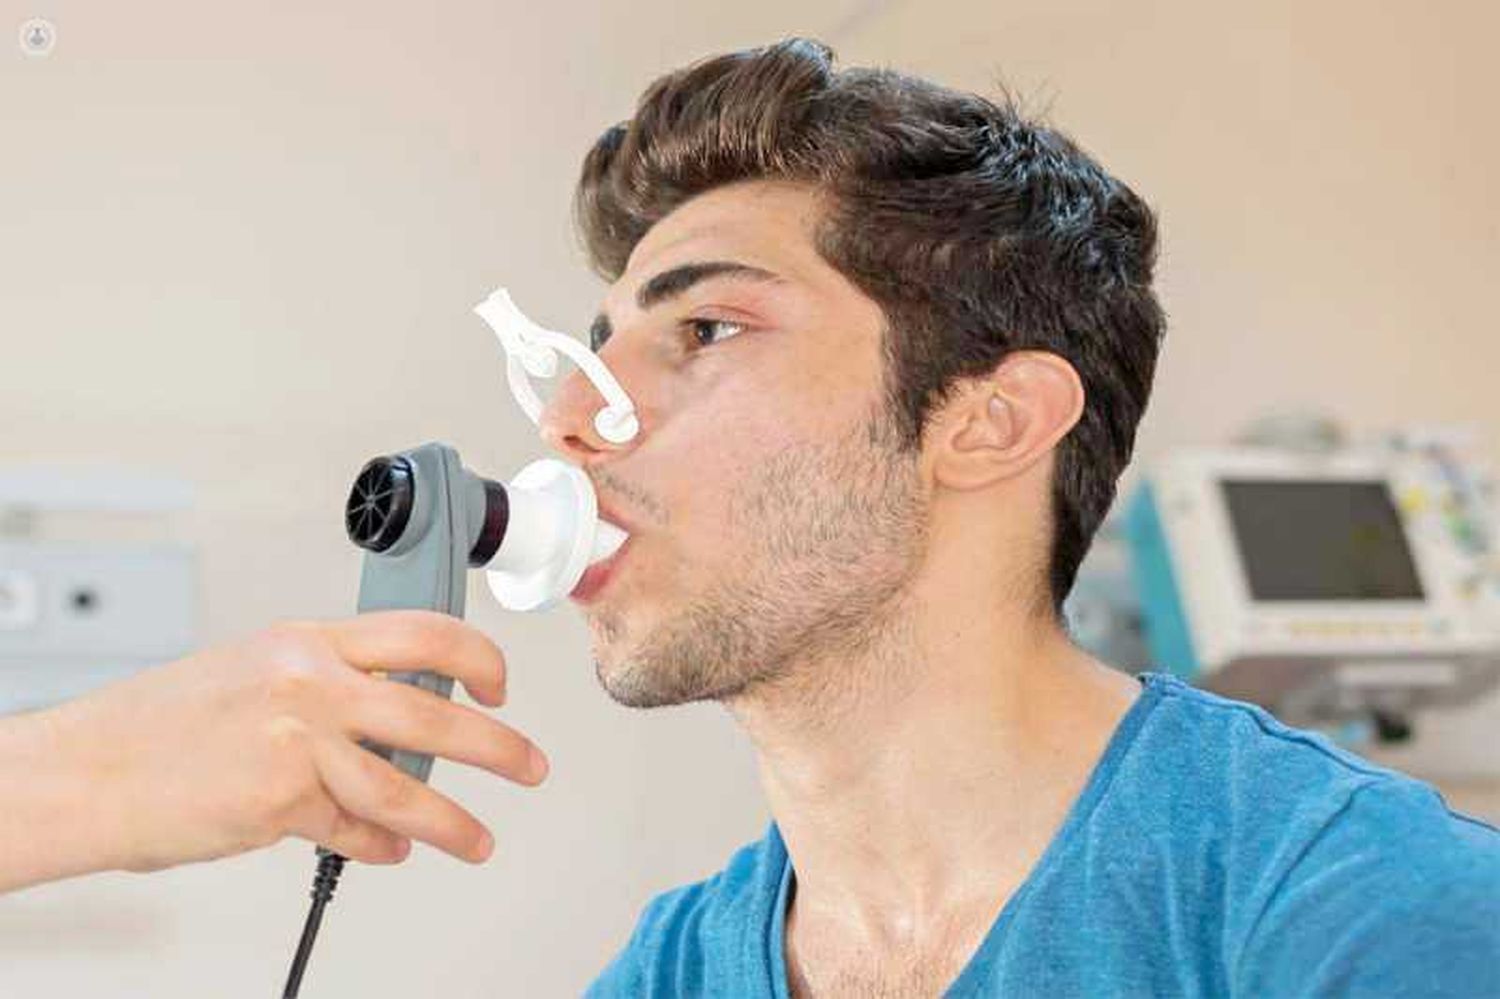 Dato alarmante: en la Argentina,
2 de cada 10 personas tiene asma